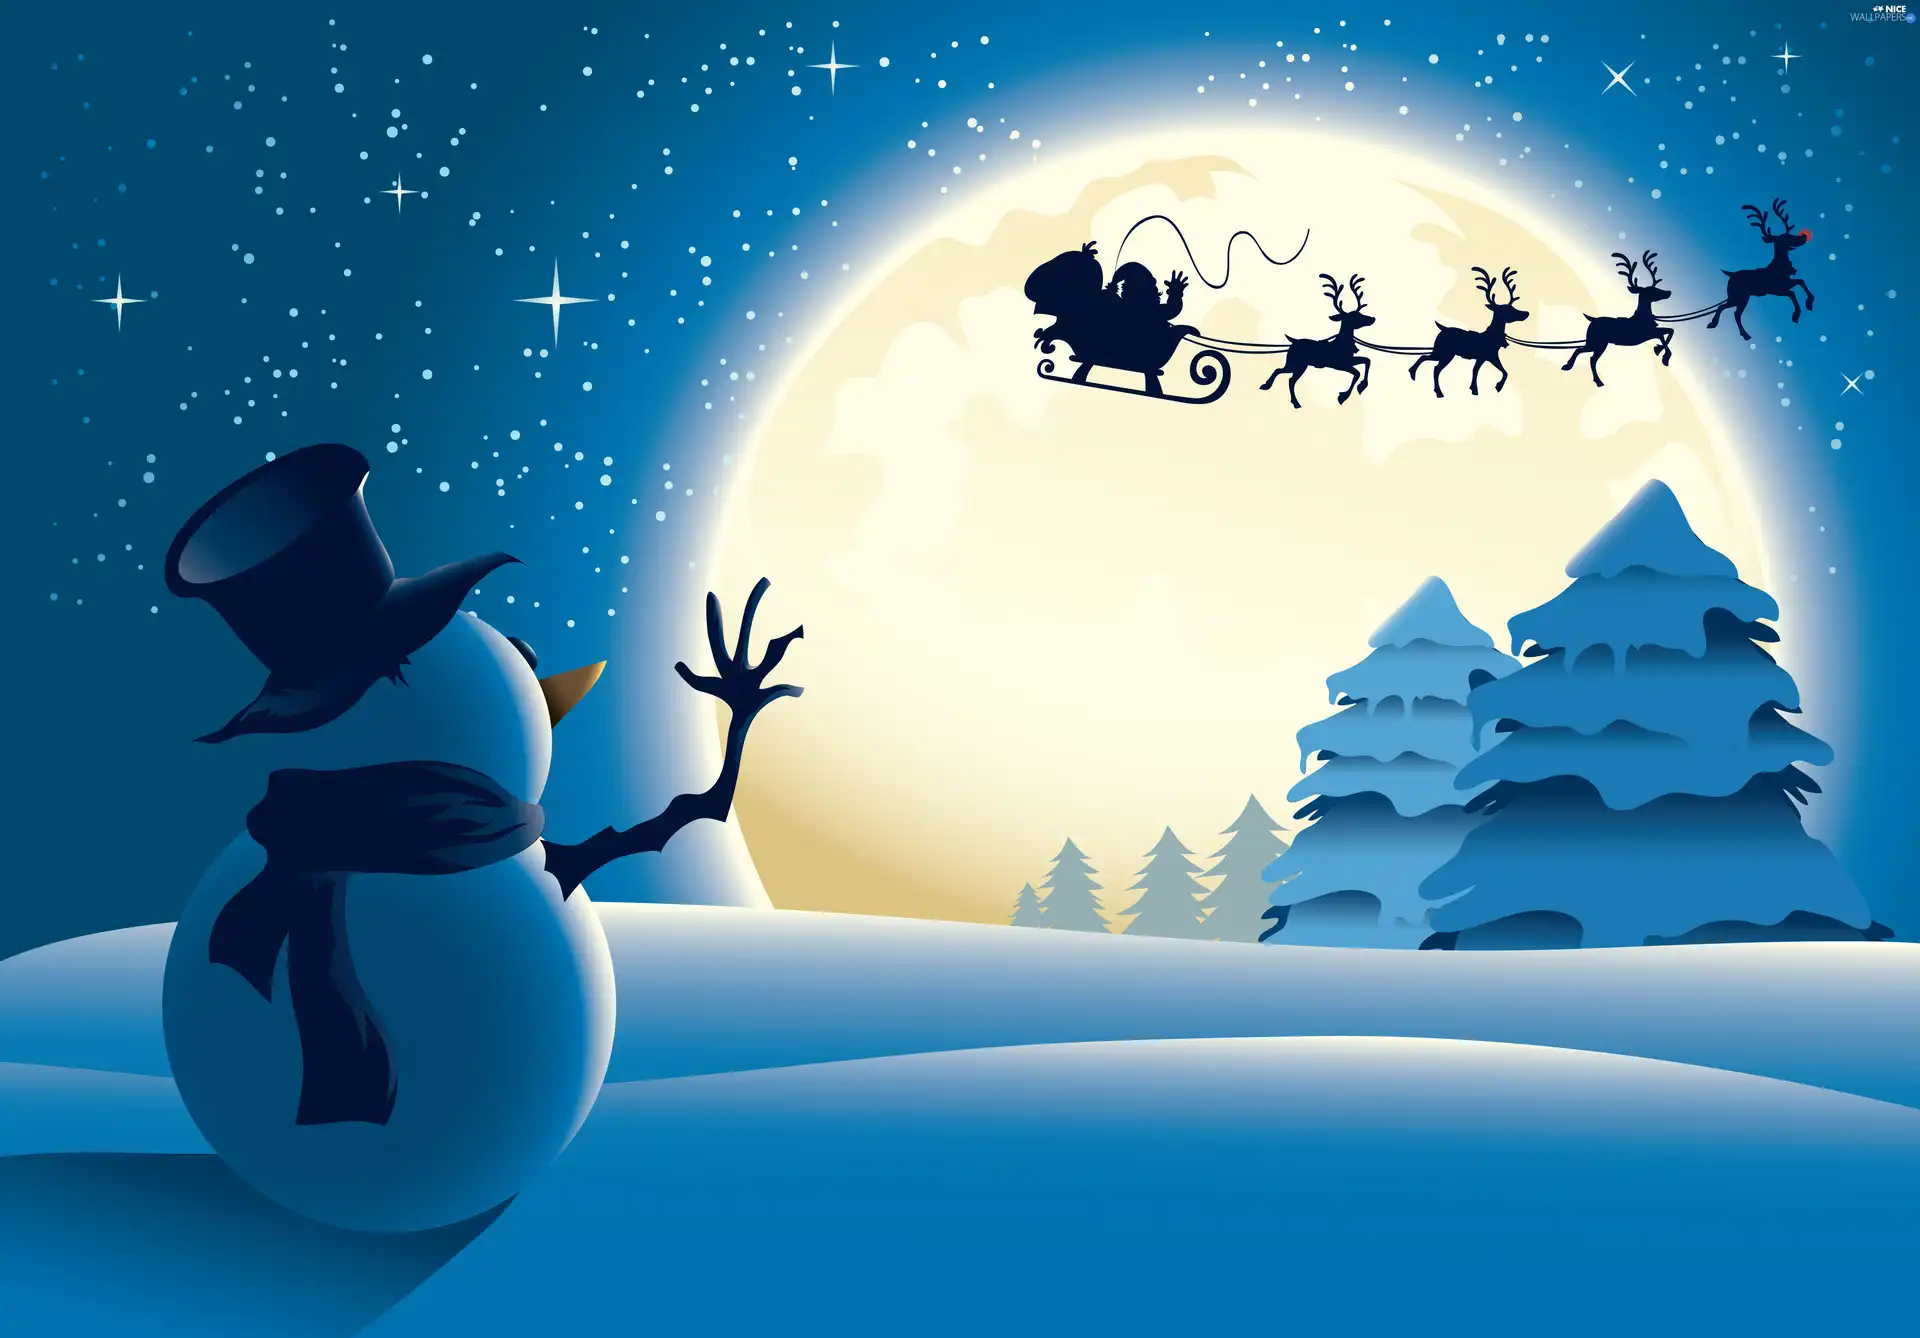 viewes, Snowman, sleigh, Santa, moon, trees